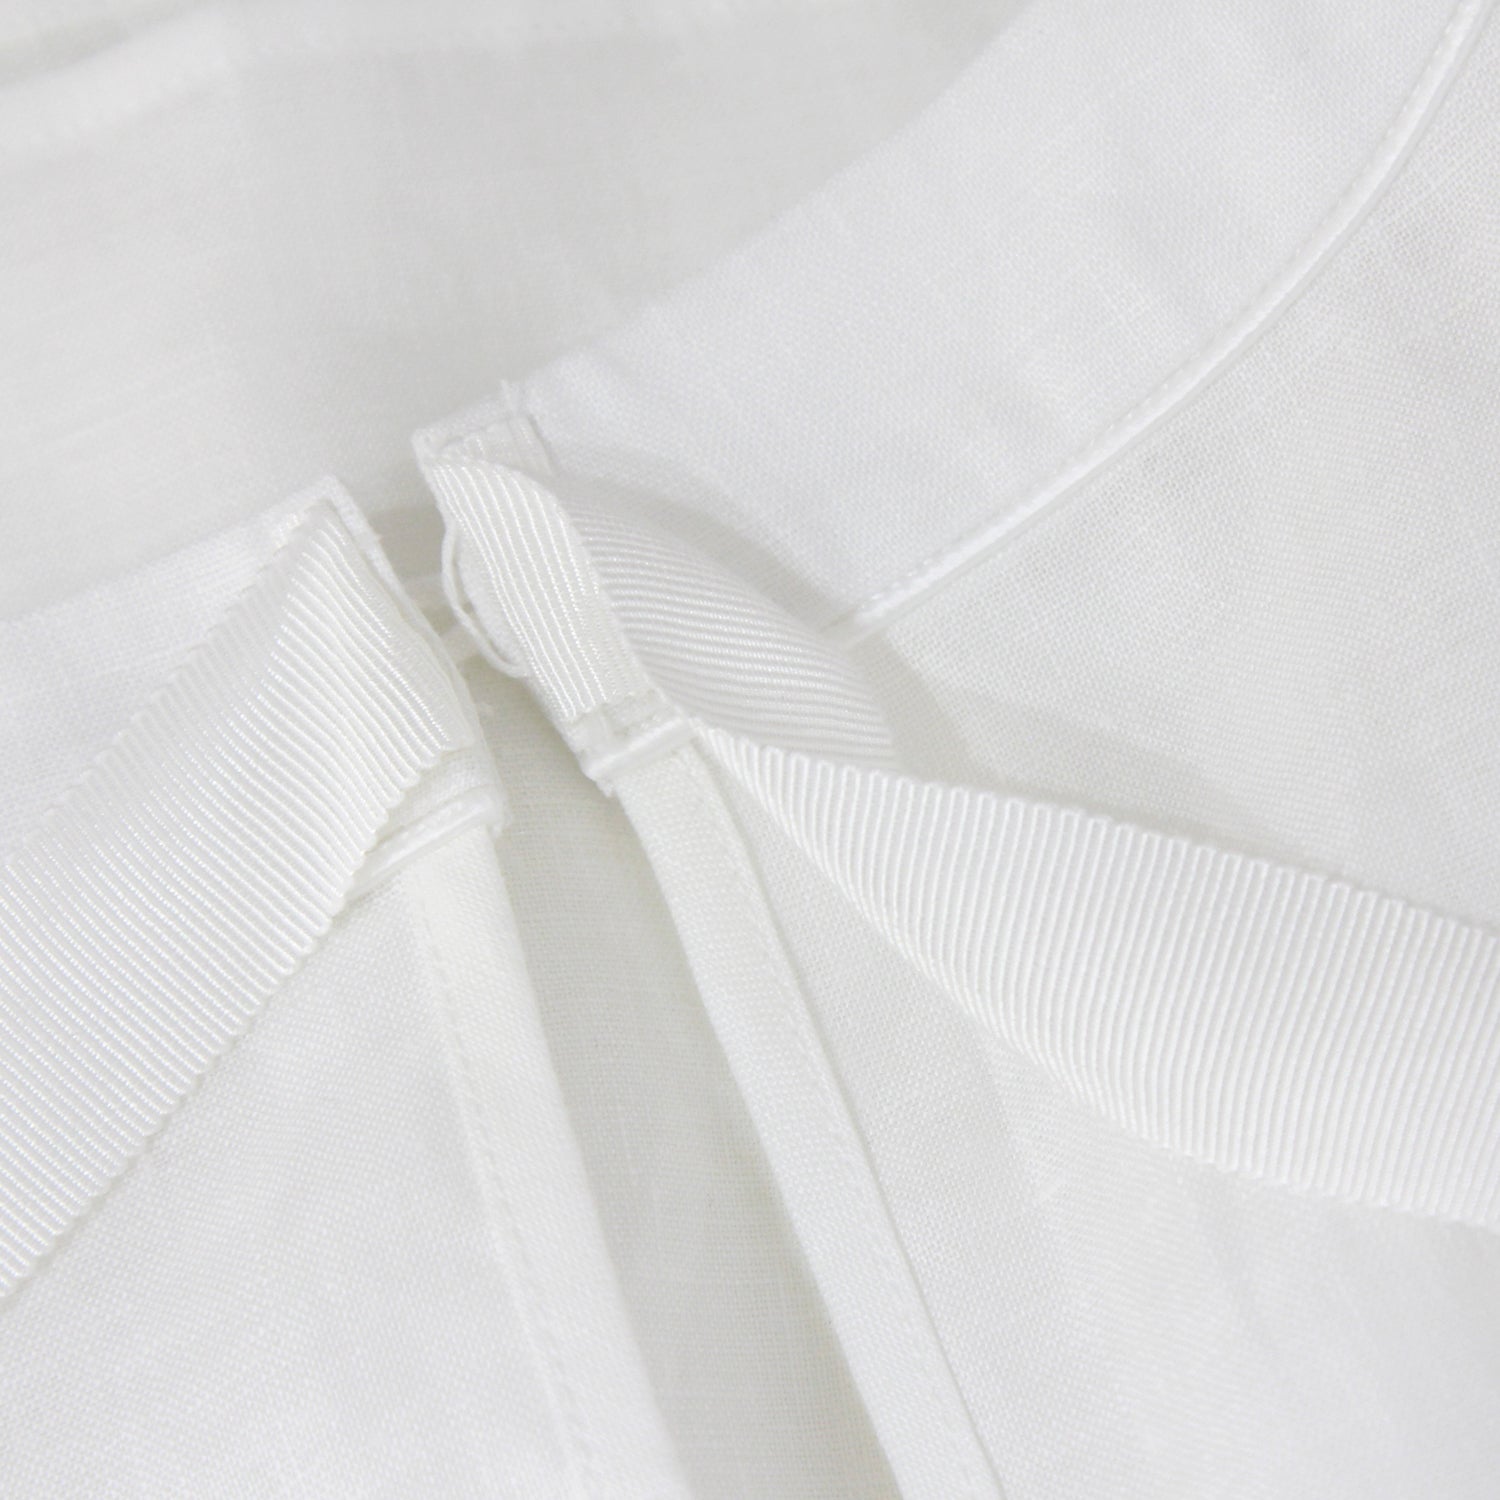 “Valencia” Linen Dress - White